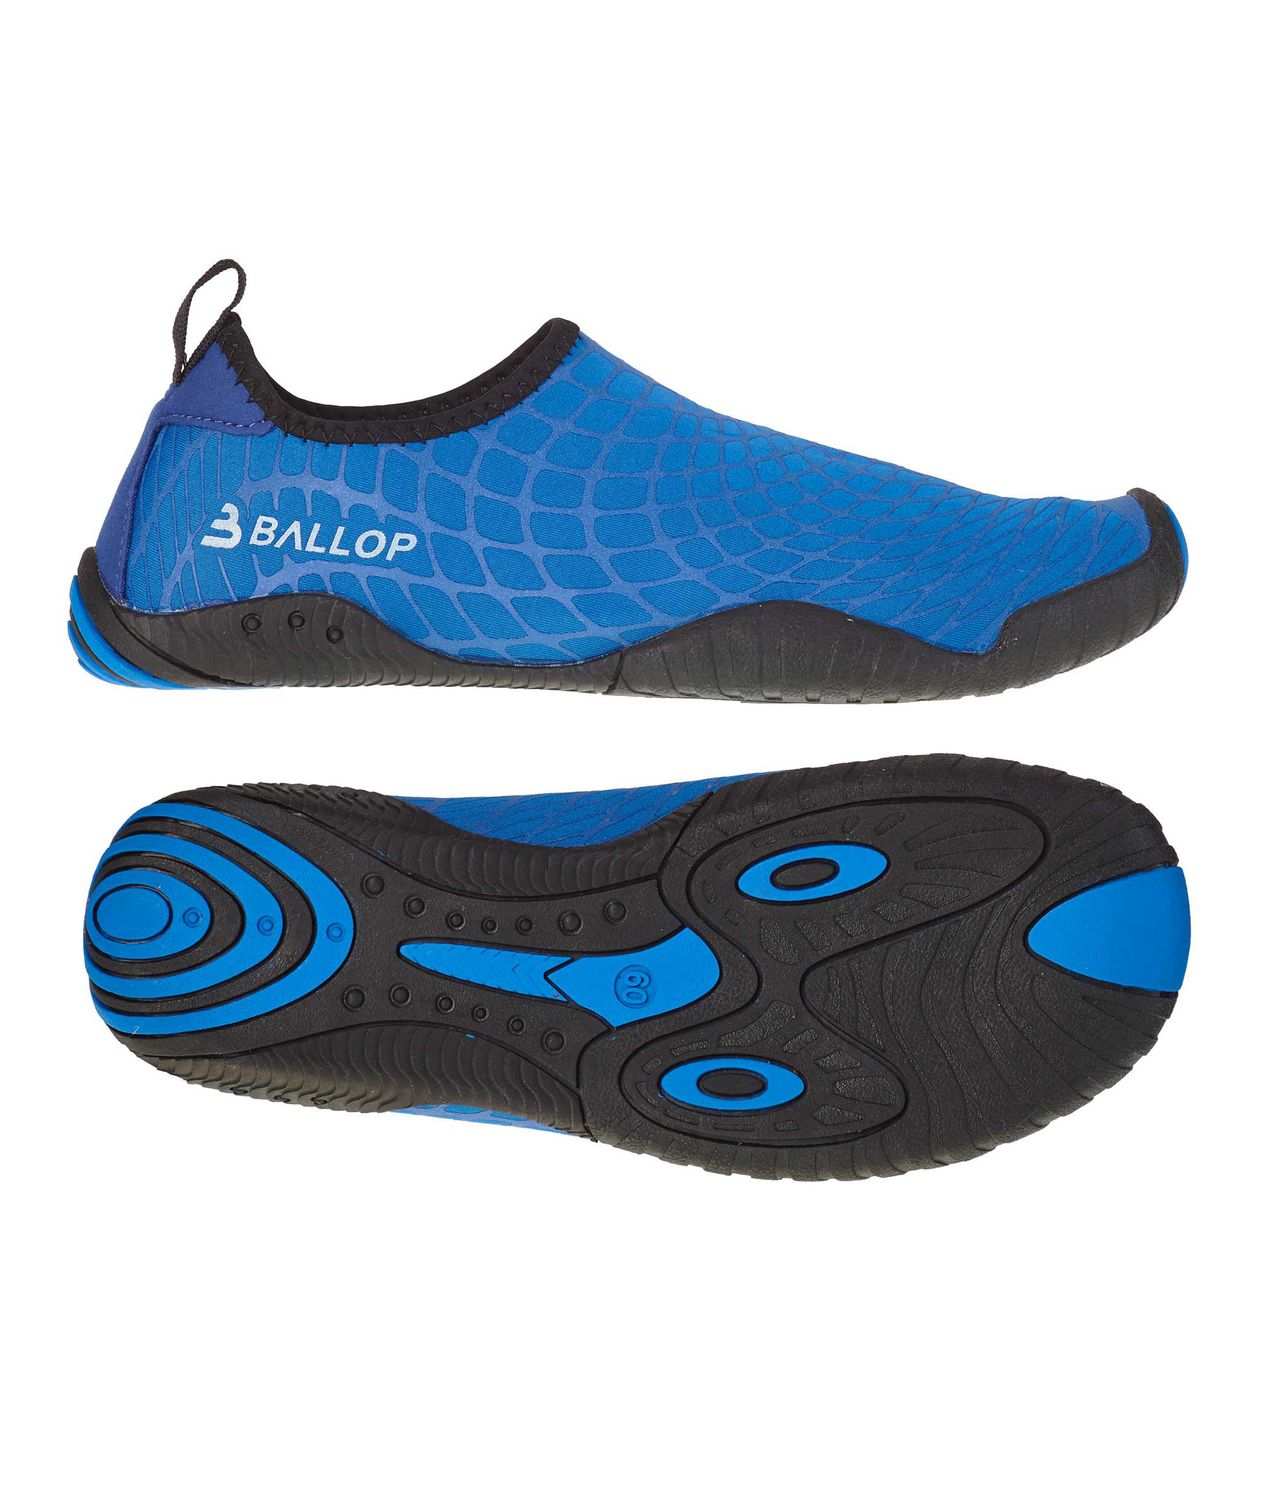 BALLOP Barfuß Schuhe Spider Blue BP903